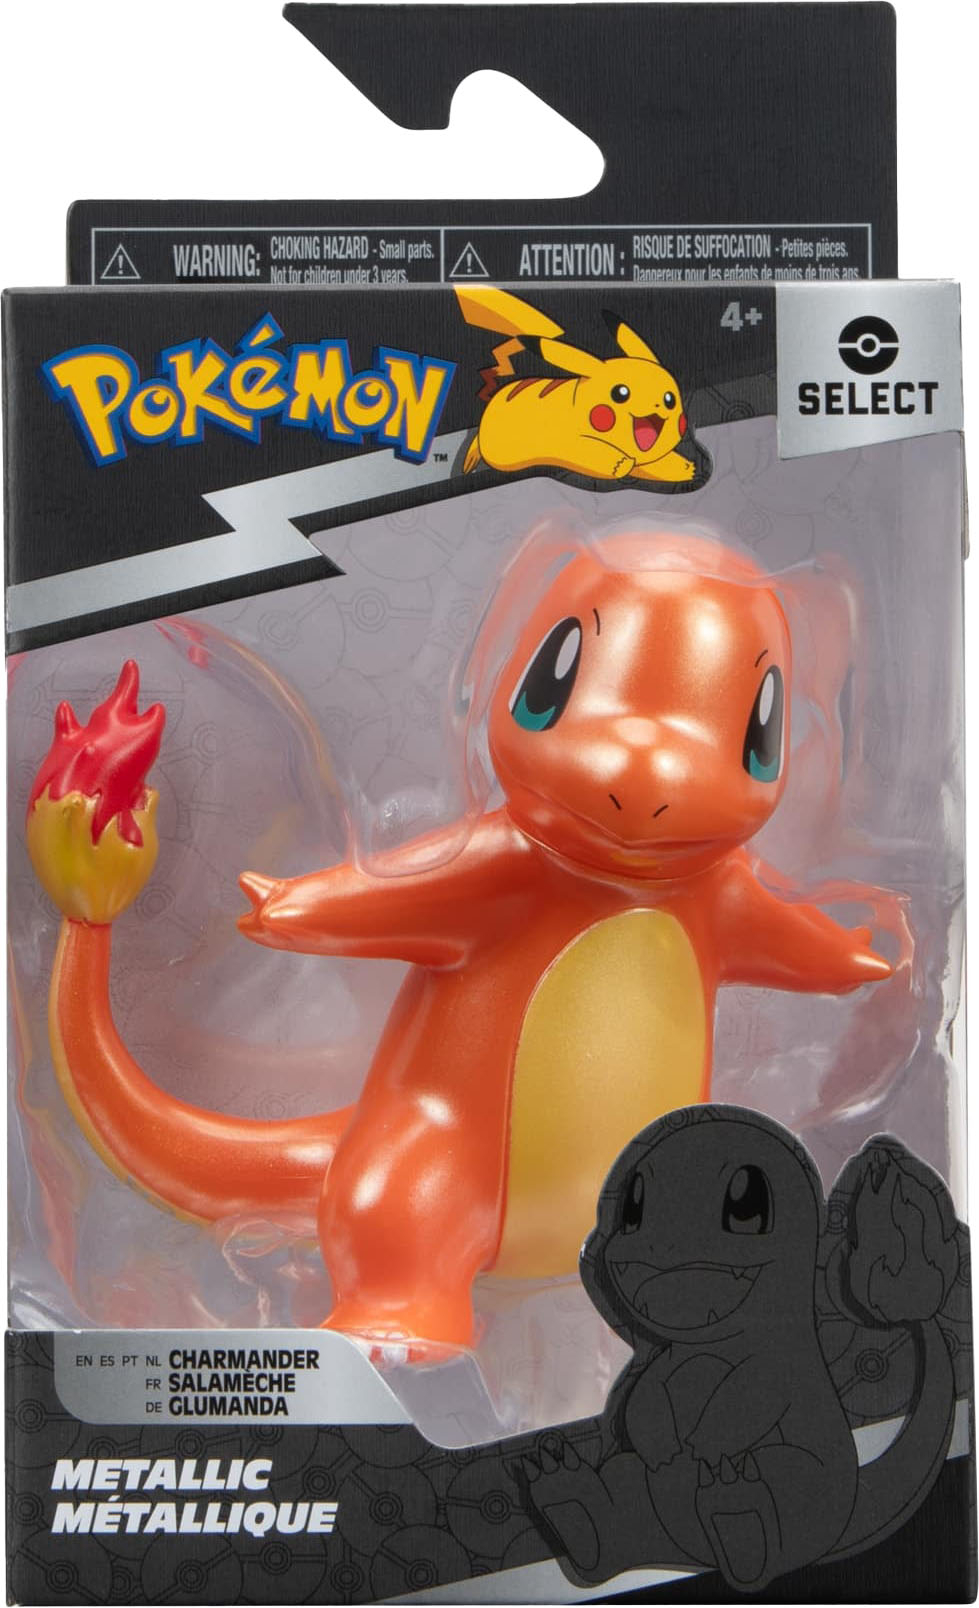 Pokémon Action Figures for sale